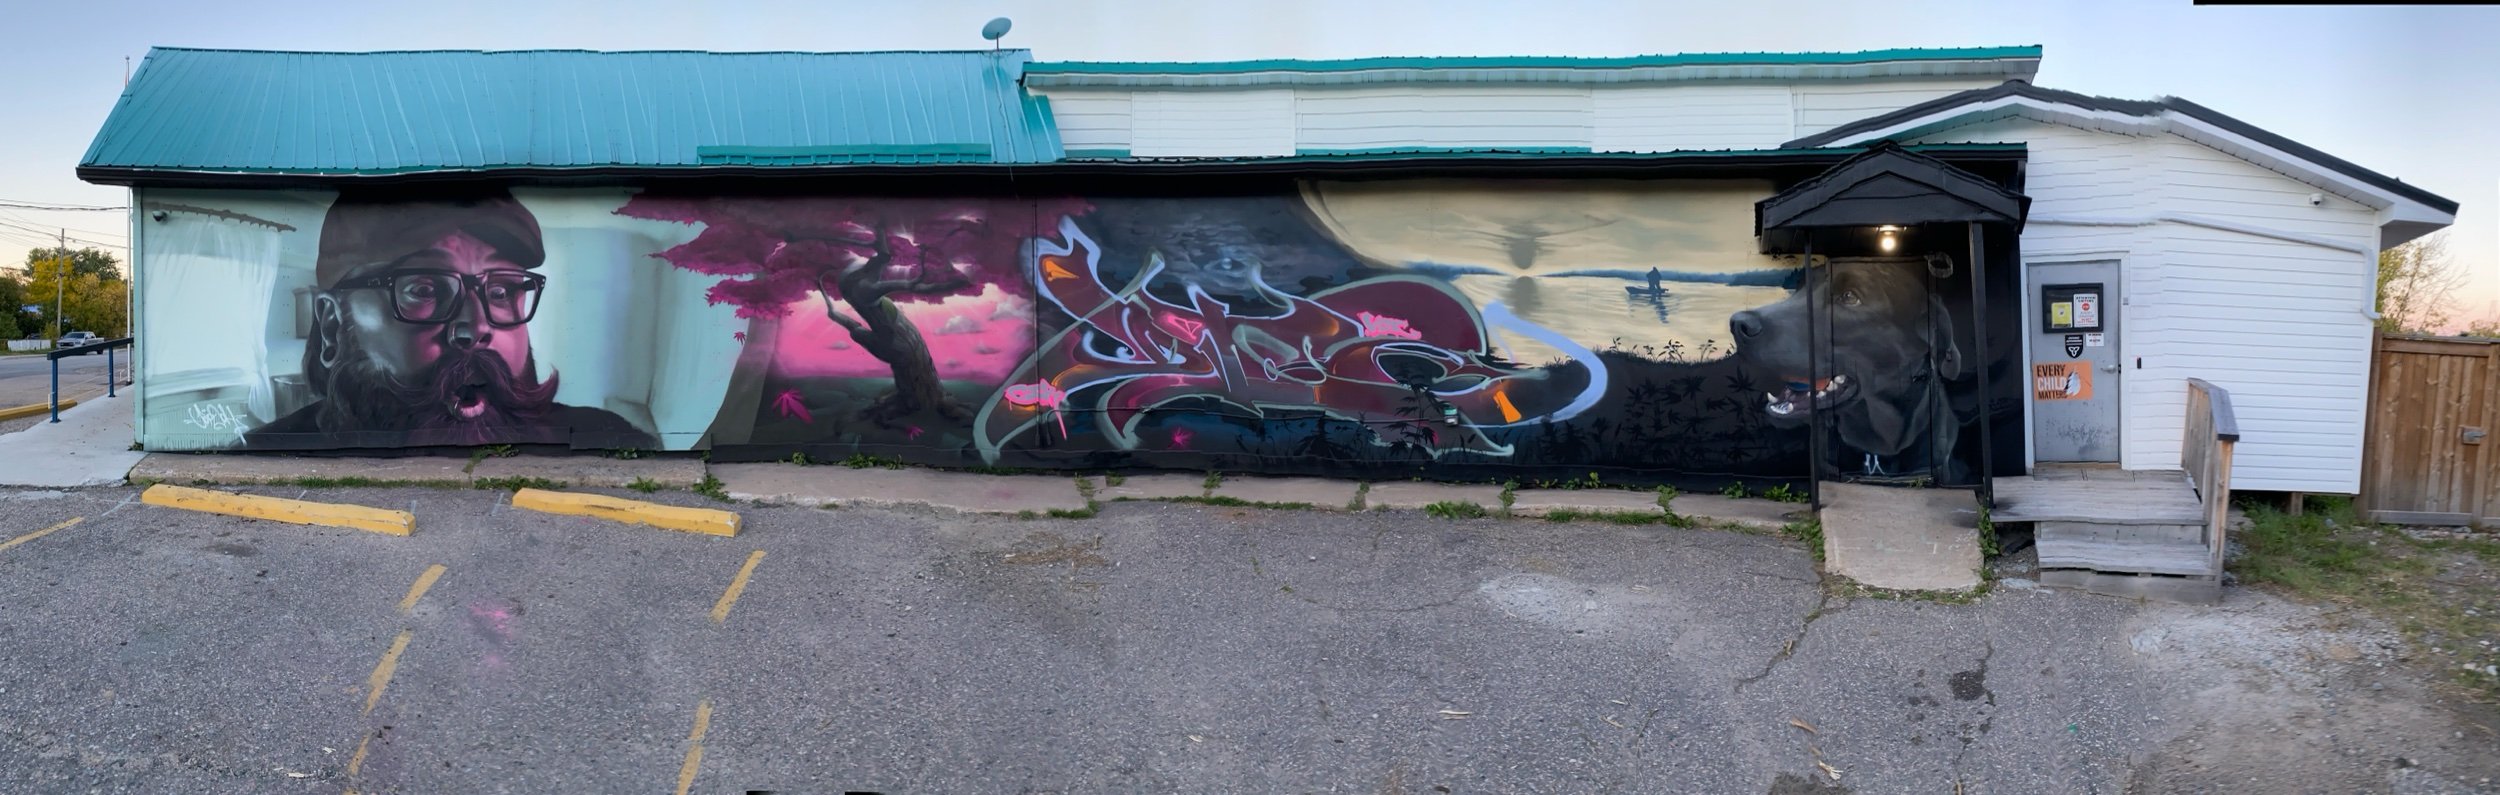 Graffiti -  Red Lake (Center Graffiti Piece)